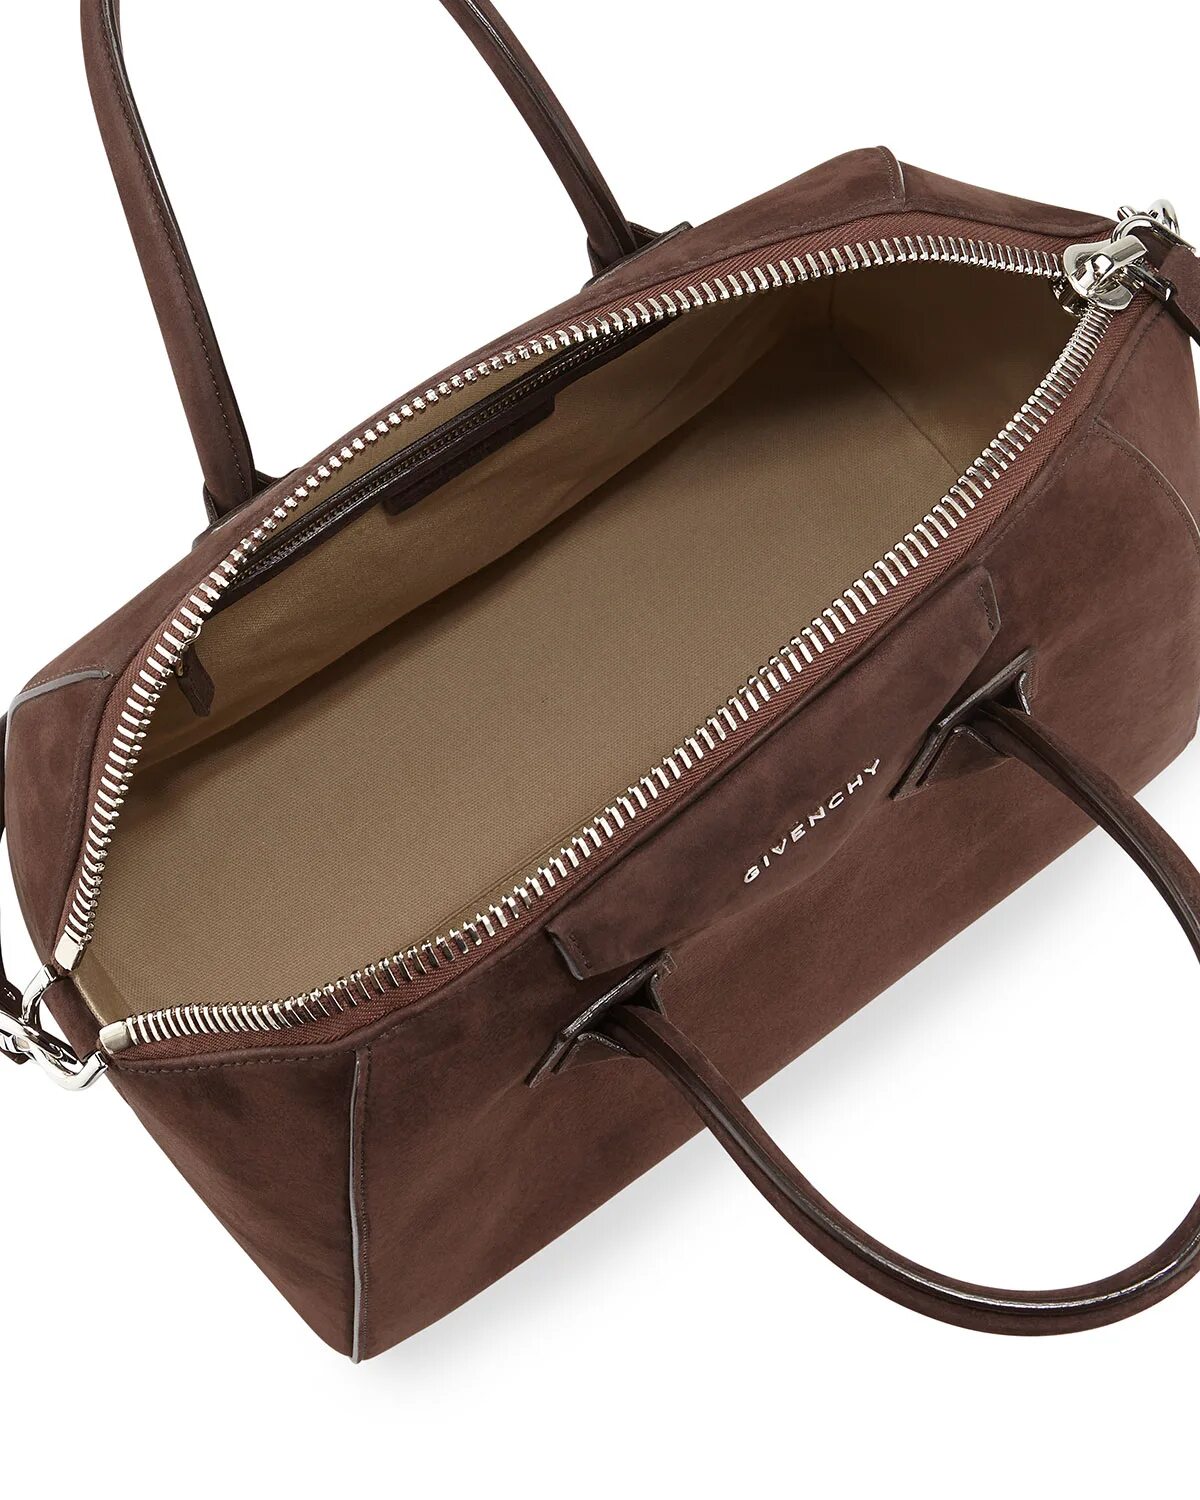 Сумки brown. 2135 Brown сумка. Сумка Givenchy коричневая. Сумка живанши коричневая. Givenchy сумка женская коричневая.